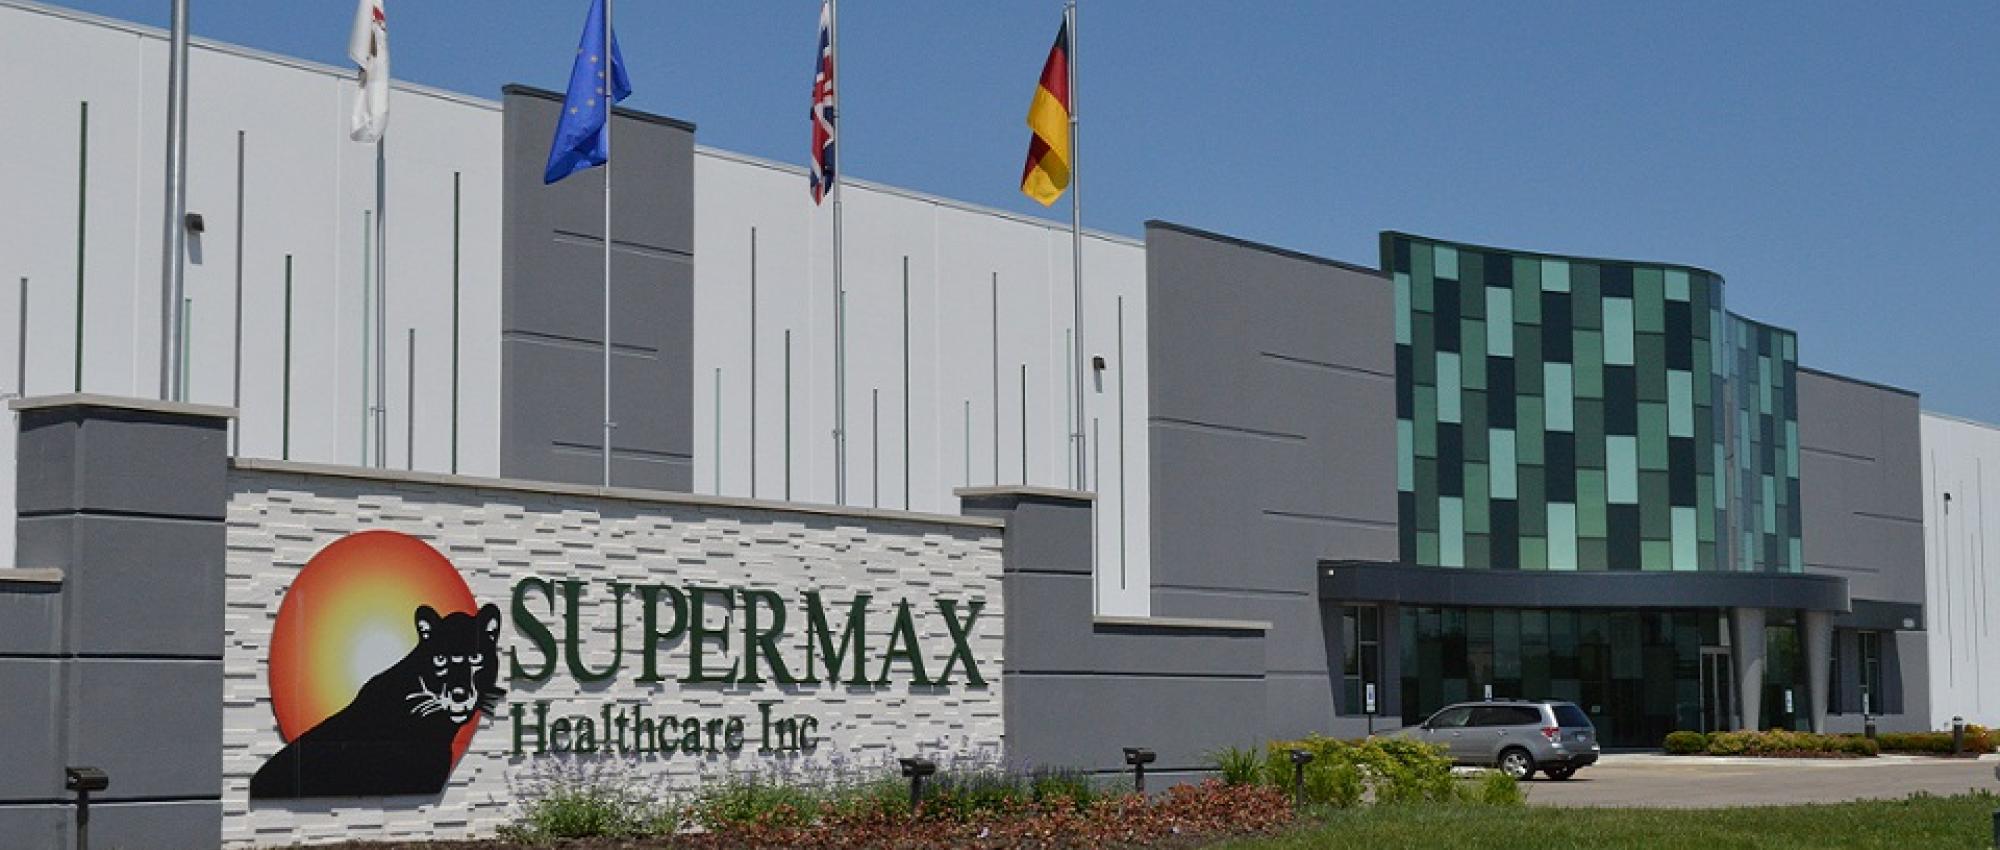 Supermax Healthcare